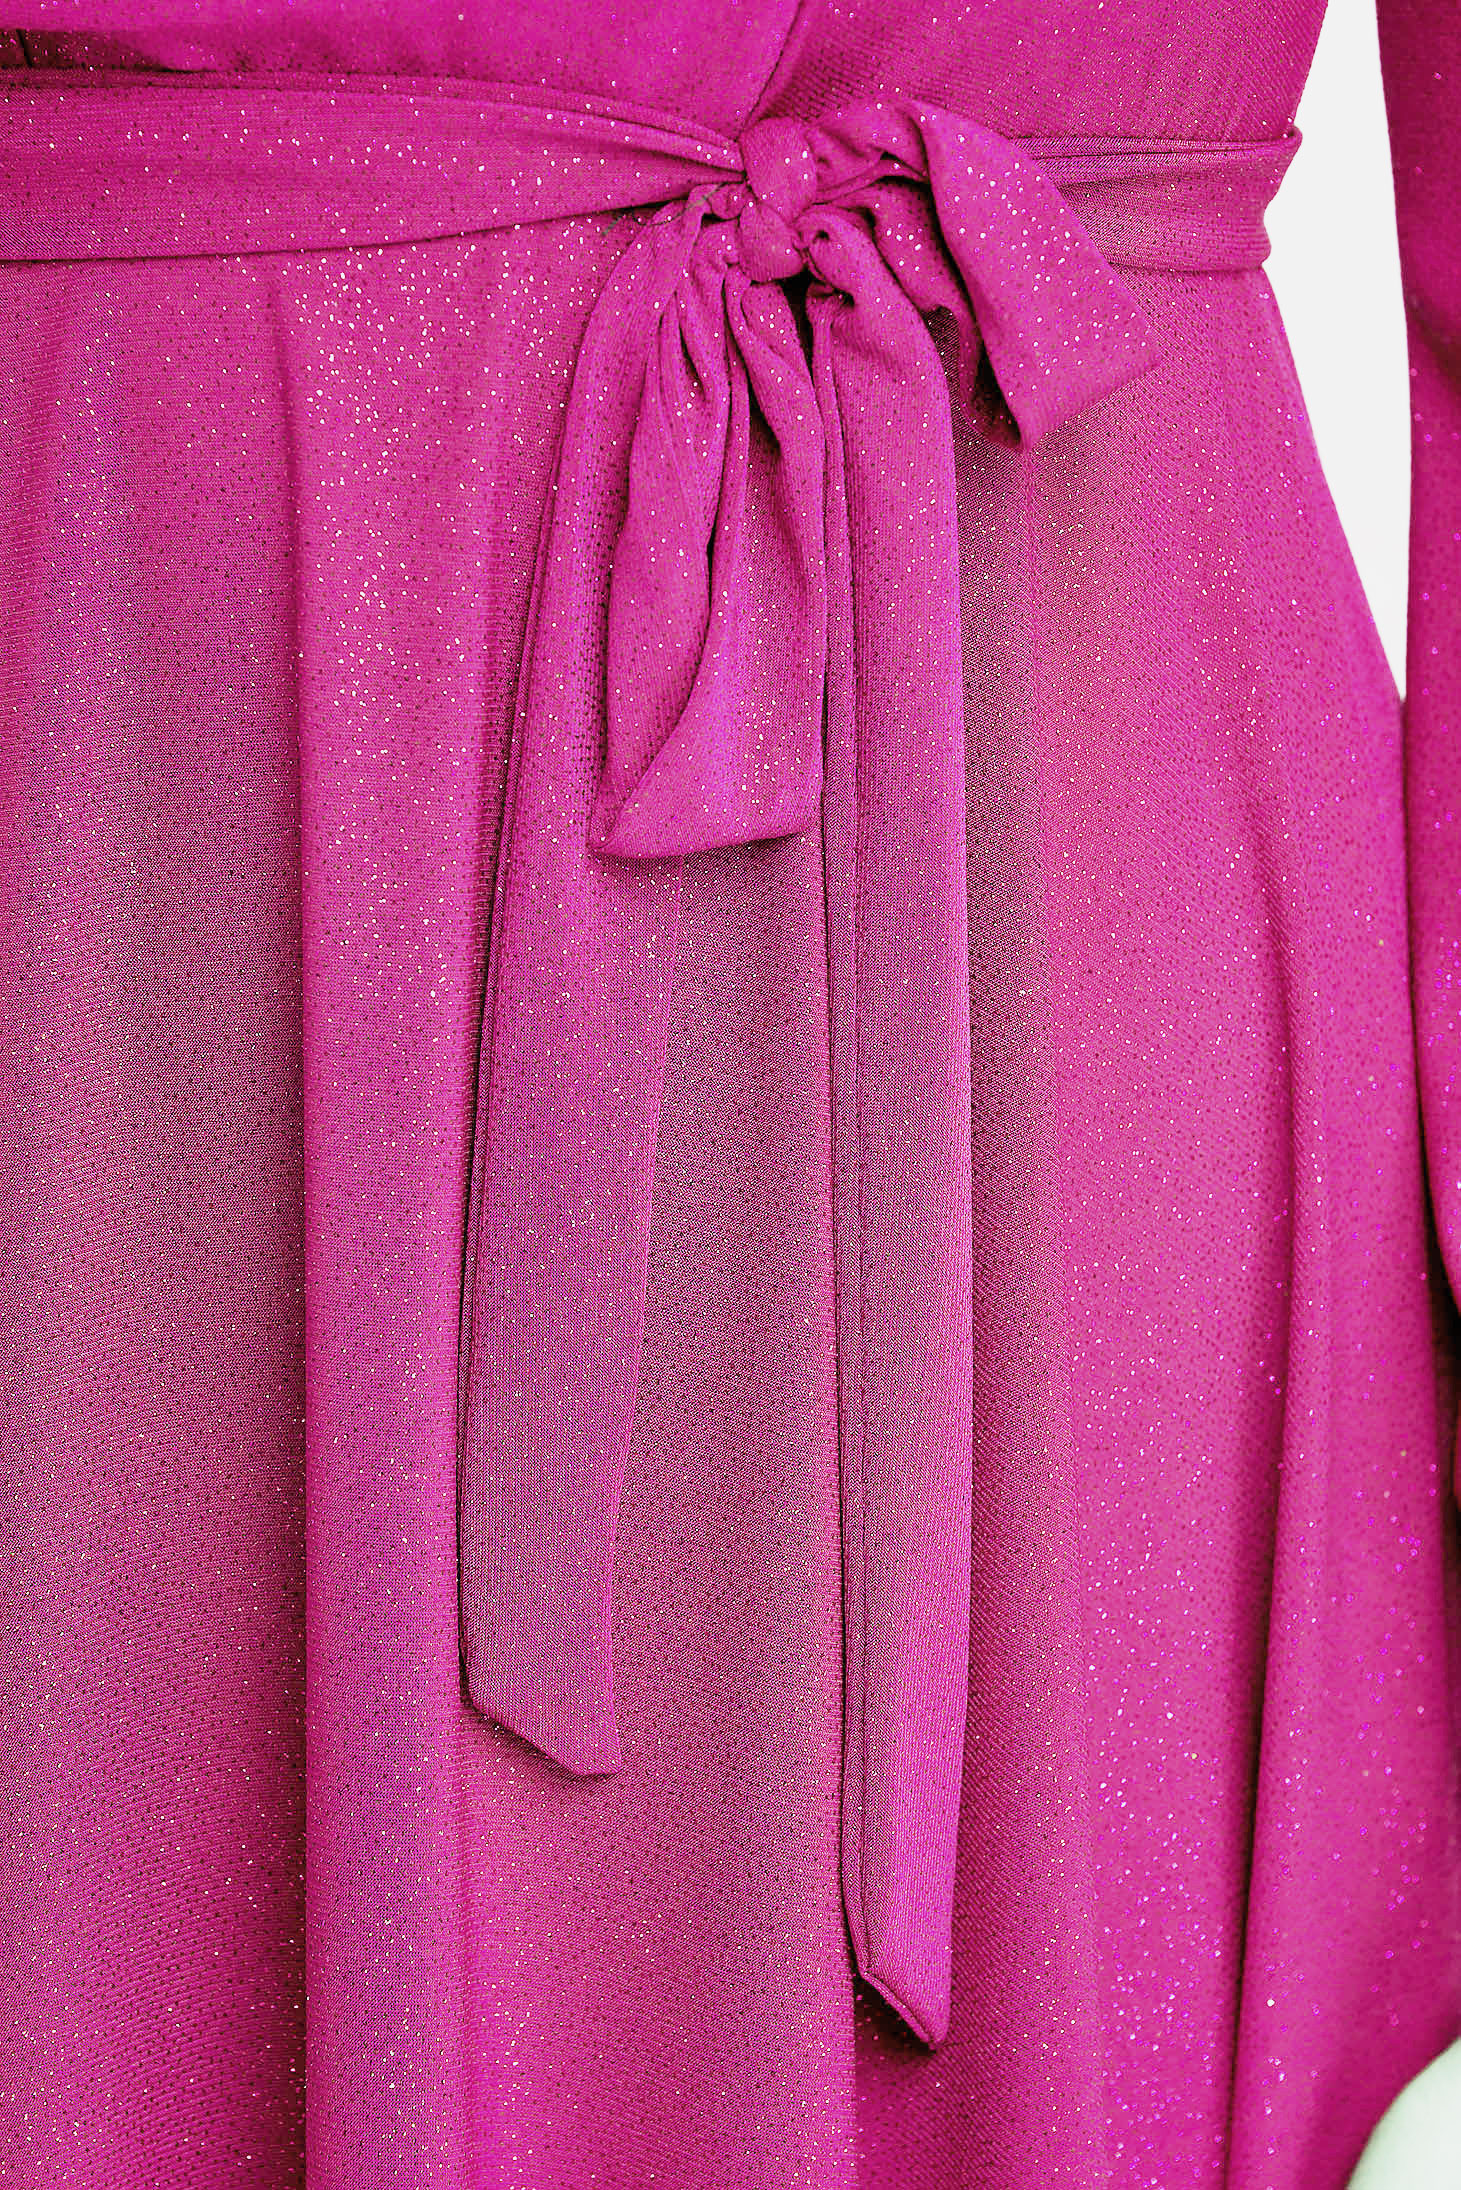 Rochie din georgette roz midi in clos cu elastic in talie cu aplicatii cu sclipici - StarShinerS 6 - StarShinerS.ro